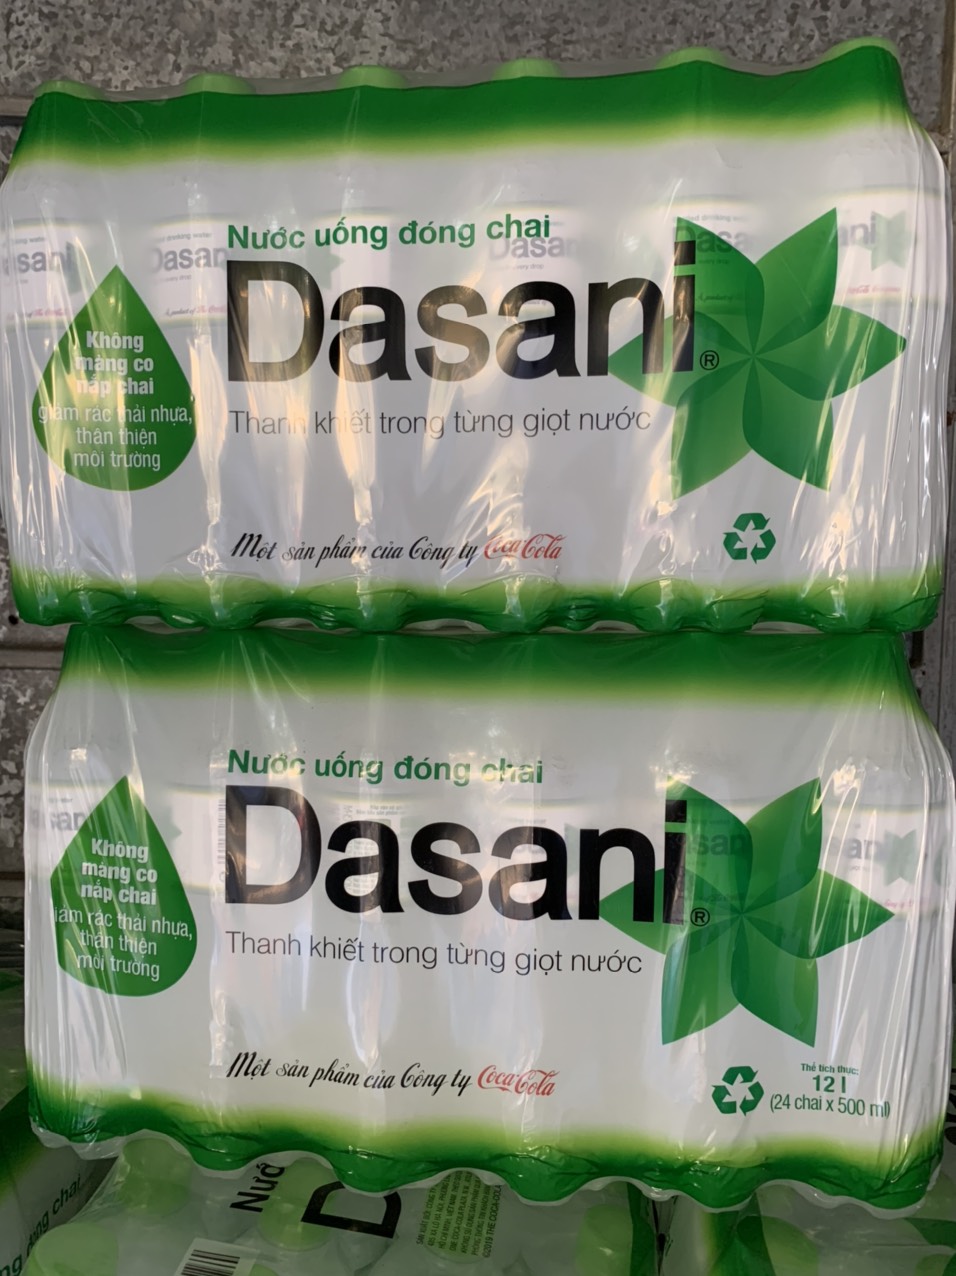 Nước tinh khiết Dasani, nuóc suối Dasani